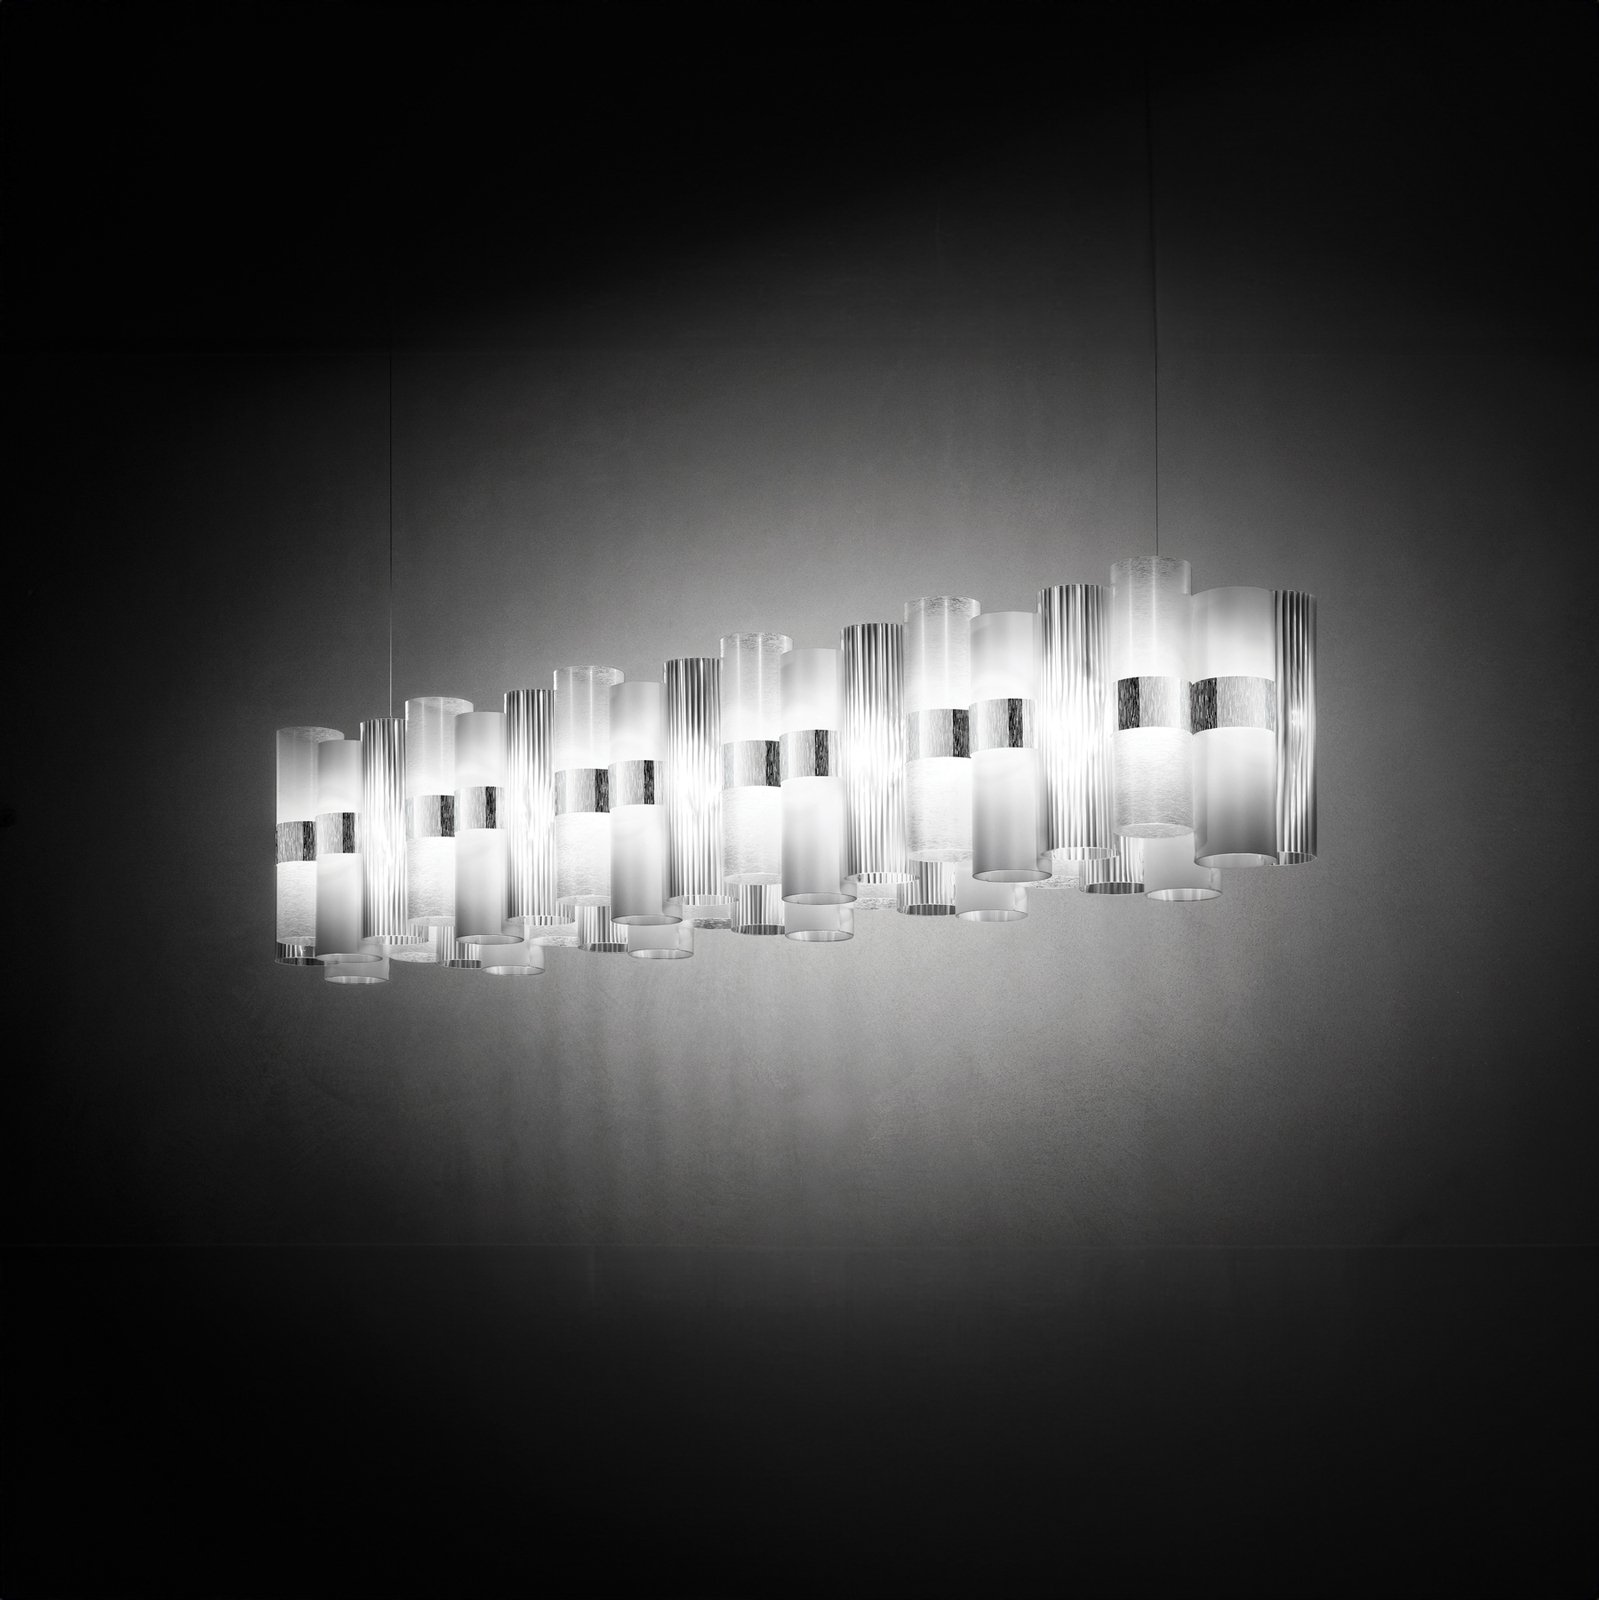 Závěsné svítidlo Slamp LED La Lollo, bílé, 140 cm